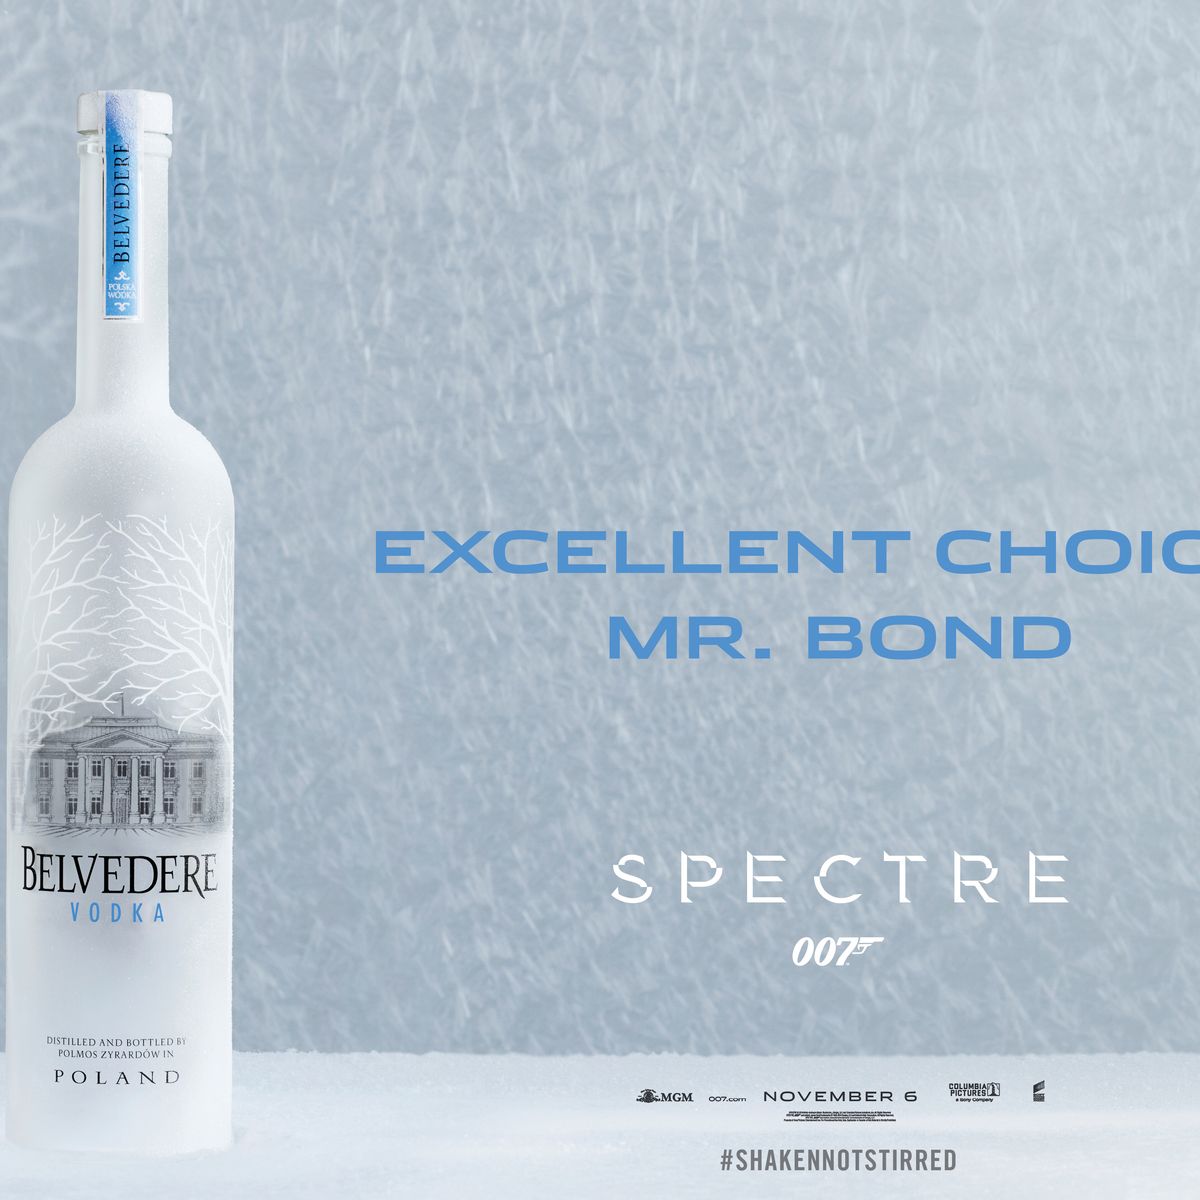 Vodka Belvedere Vodka Announces Partnership with Spectre